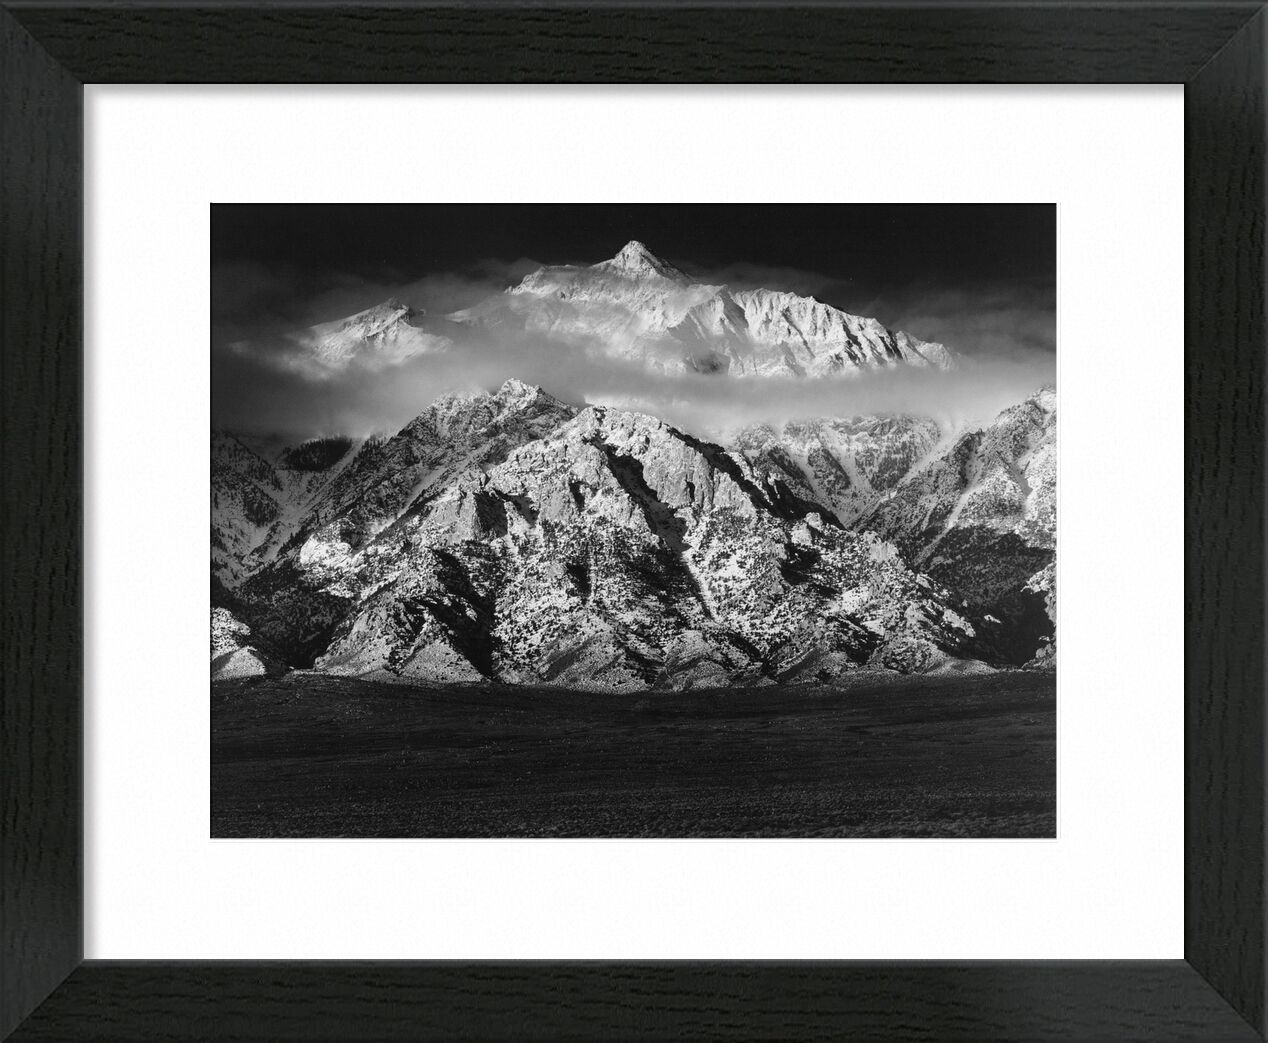 Mountain Williamson, Sierra Nevada - ANSEL ADAMS 1949 desde Bellas artes, Prodi Art, montañas, cielo, nubes, prado, blanco y negro, ANSEL ADAMS